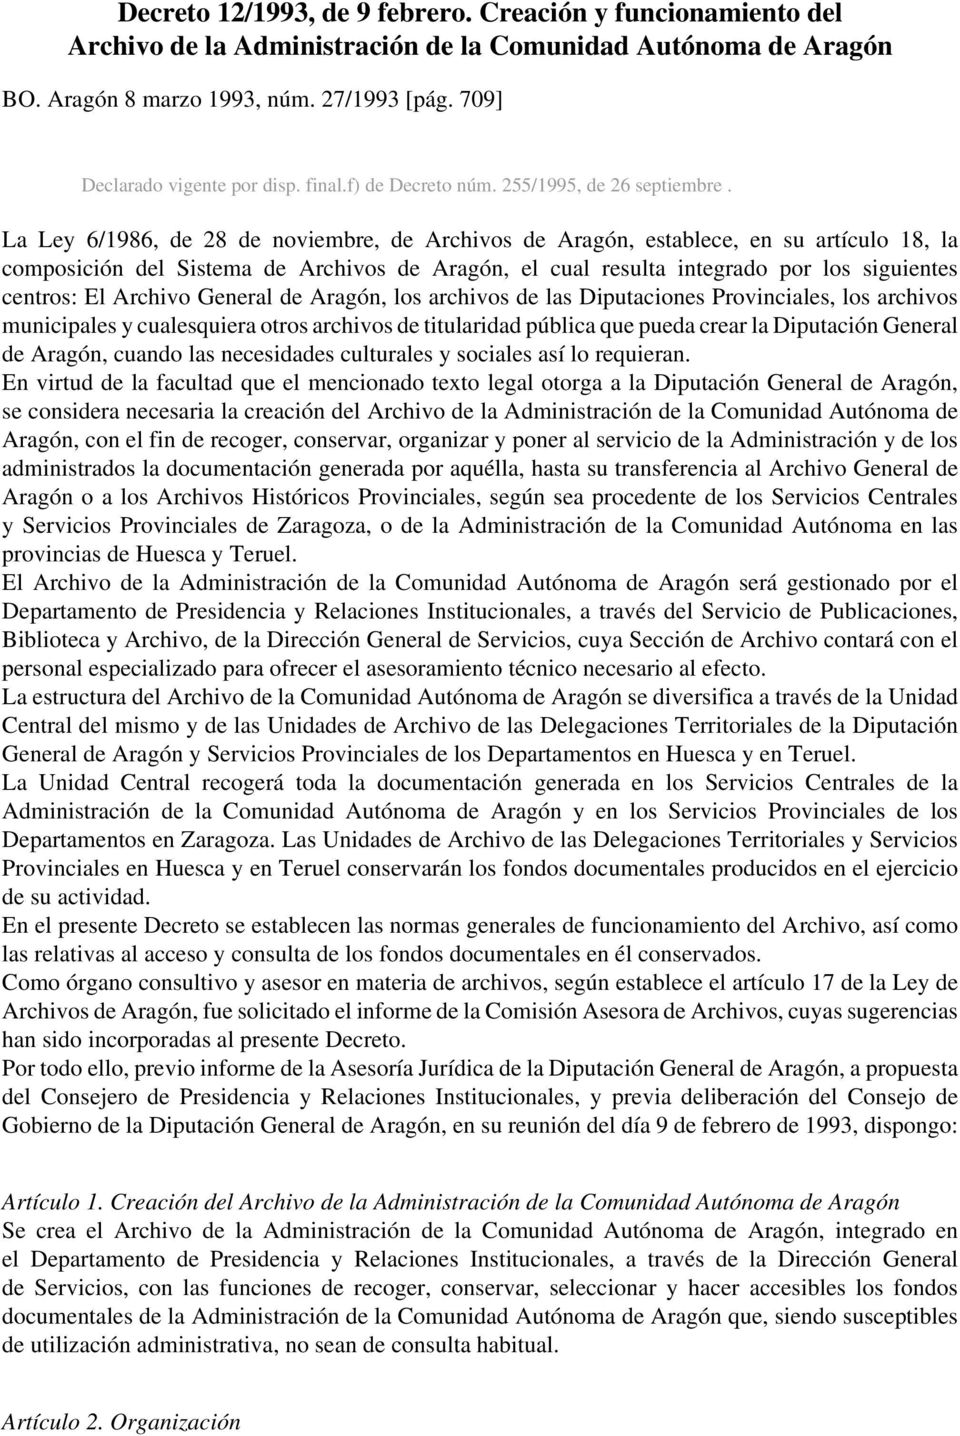 La Ley 6/1986, de 28 de noviembre, de Archivos de Aragón, establece, en su artículo 18, la composición del Sistema de Archivos de Aragón, el cual resulta integrado por los siguientes centros: El